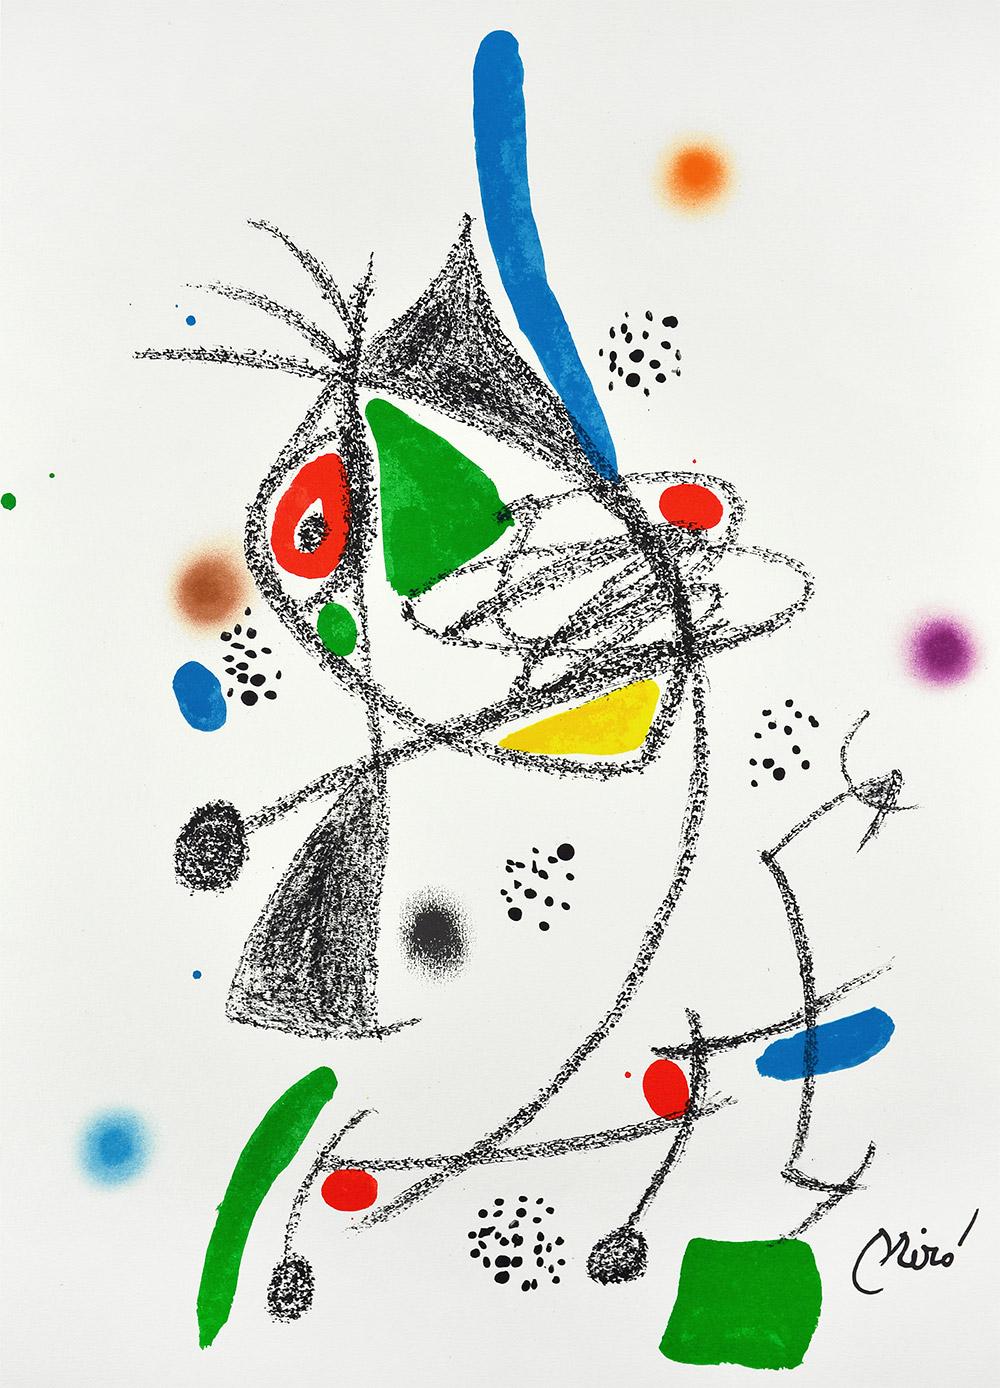 Maravillas con variaciones acrósticas en el jardín de Miró IV
Date of creation: 1975
Medium: Lithograph on Gvarro paper
Edition: 1500
Size: 49,5 x 35,5 cm
Condition: In very good conditions and never framed
Observations: Lithograph on Gvarro paper